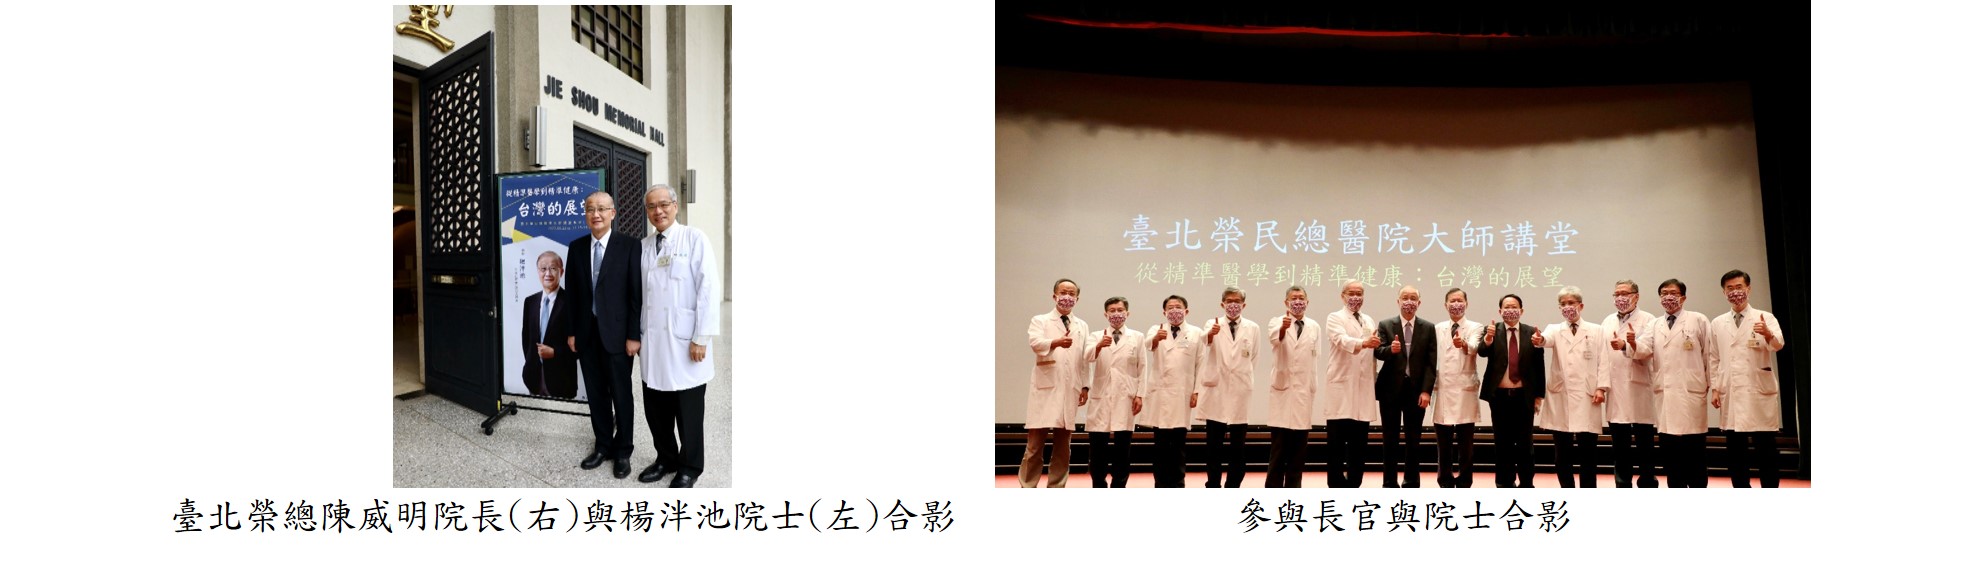 從精準醫學到精準健康:臺灣的展望